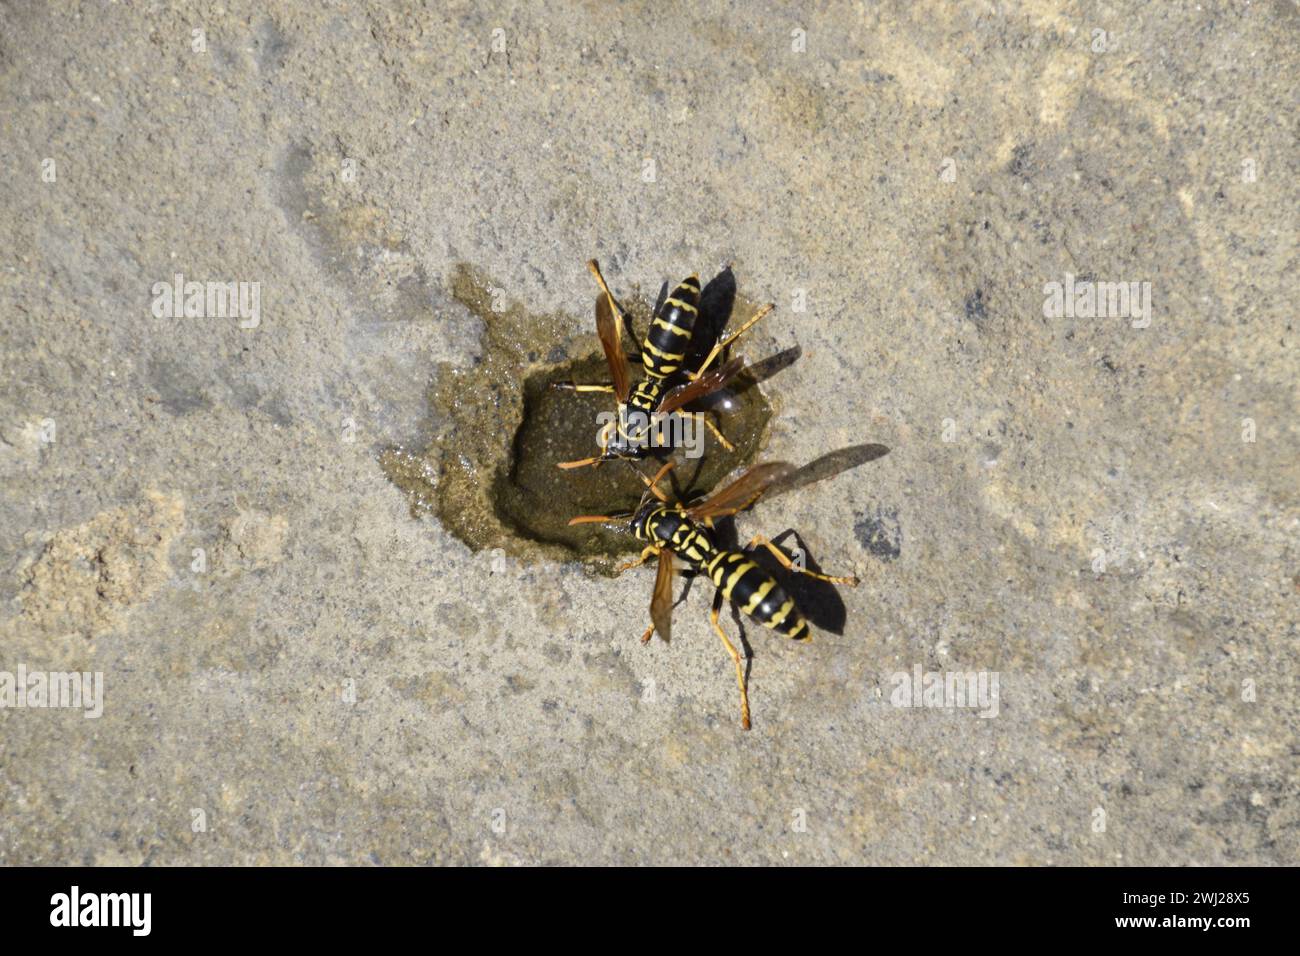 Die Wasps Polistes trinken Wasser Stockfoto